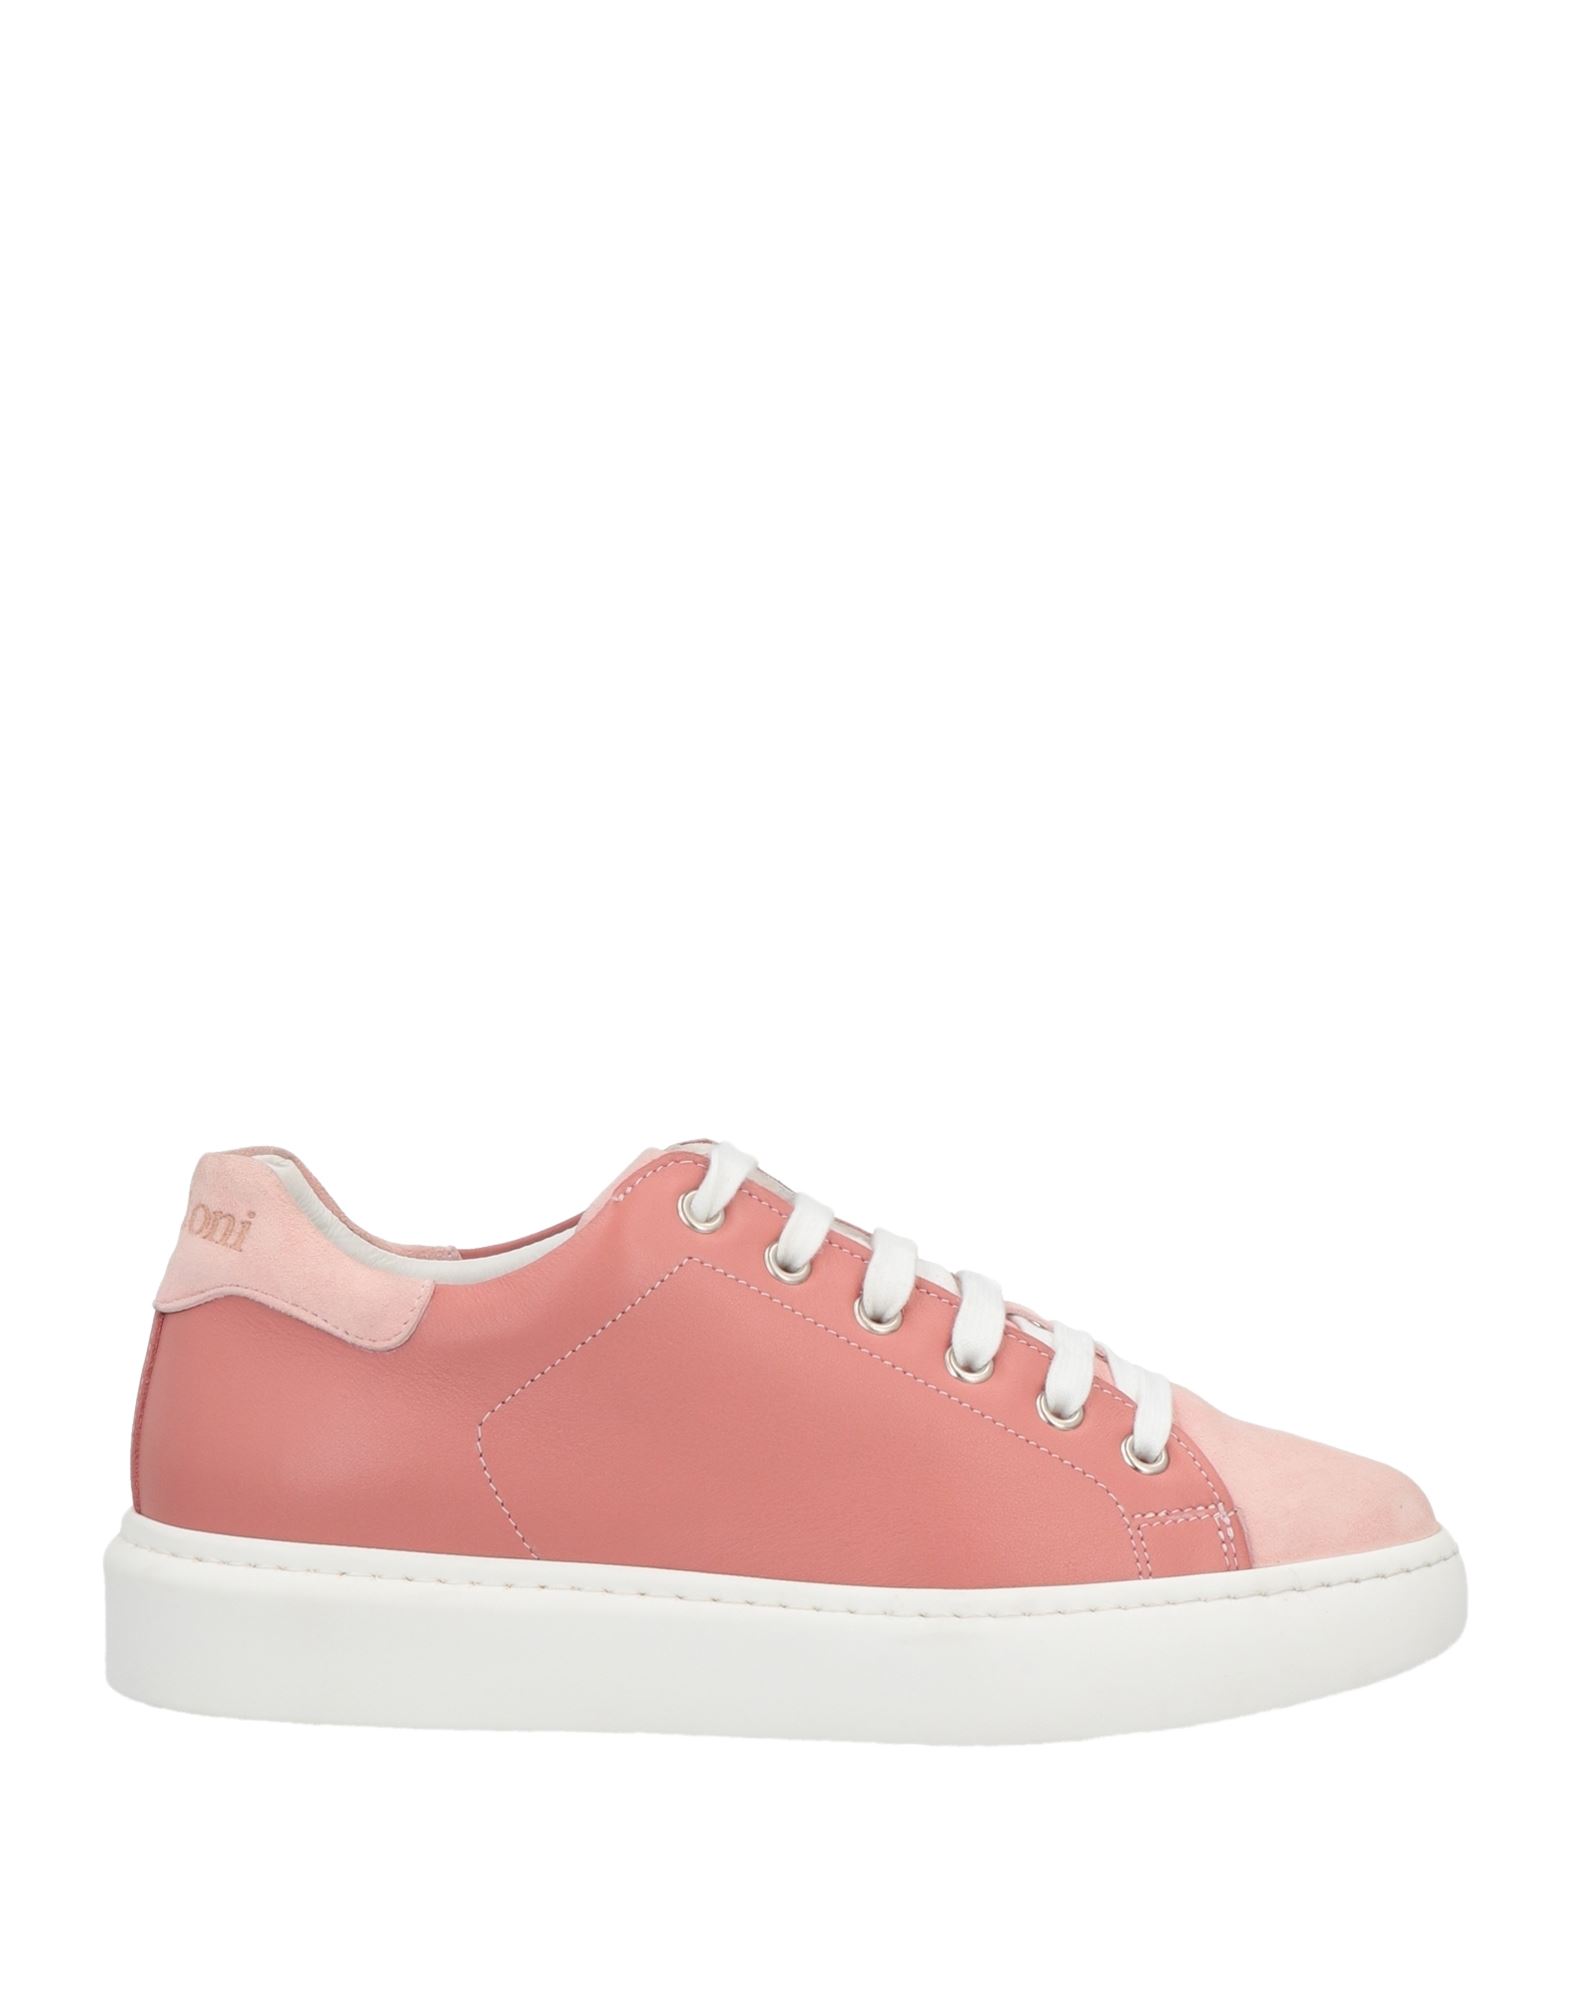 A.testoni Sneakers In Pink